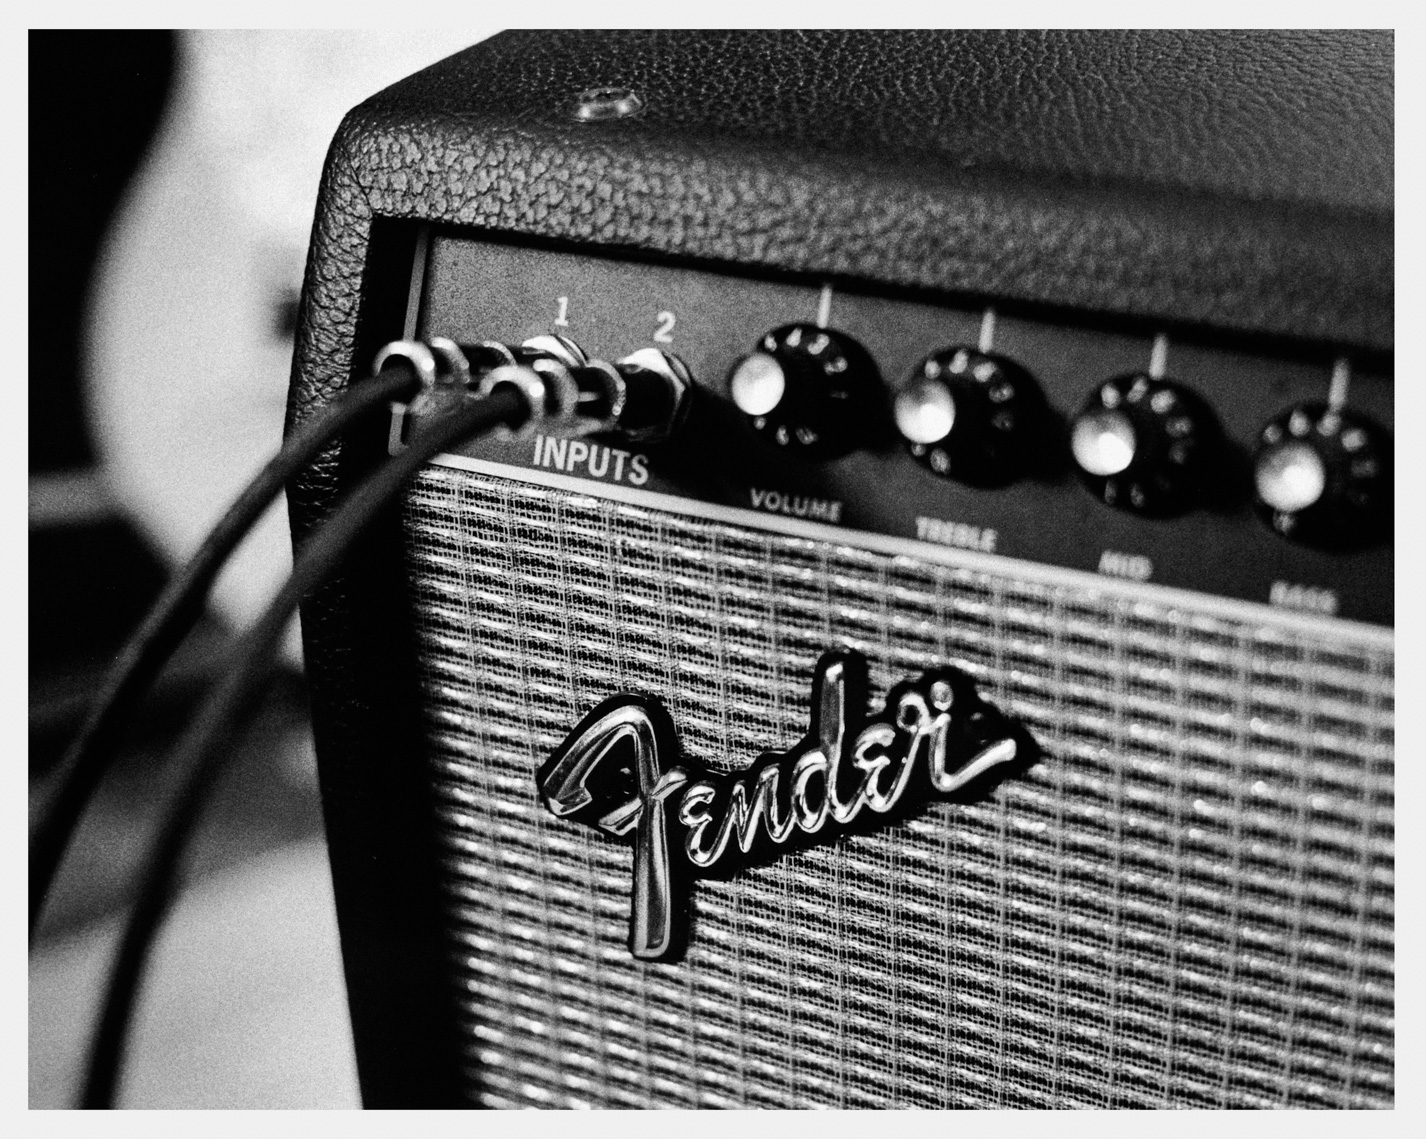 Fender Stage 160